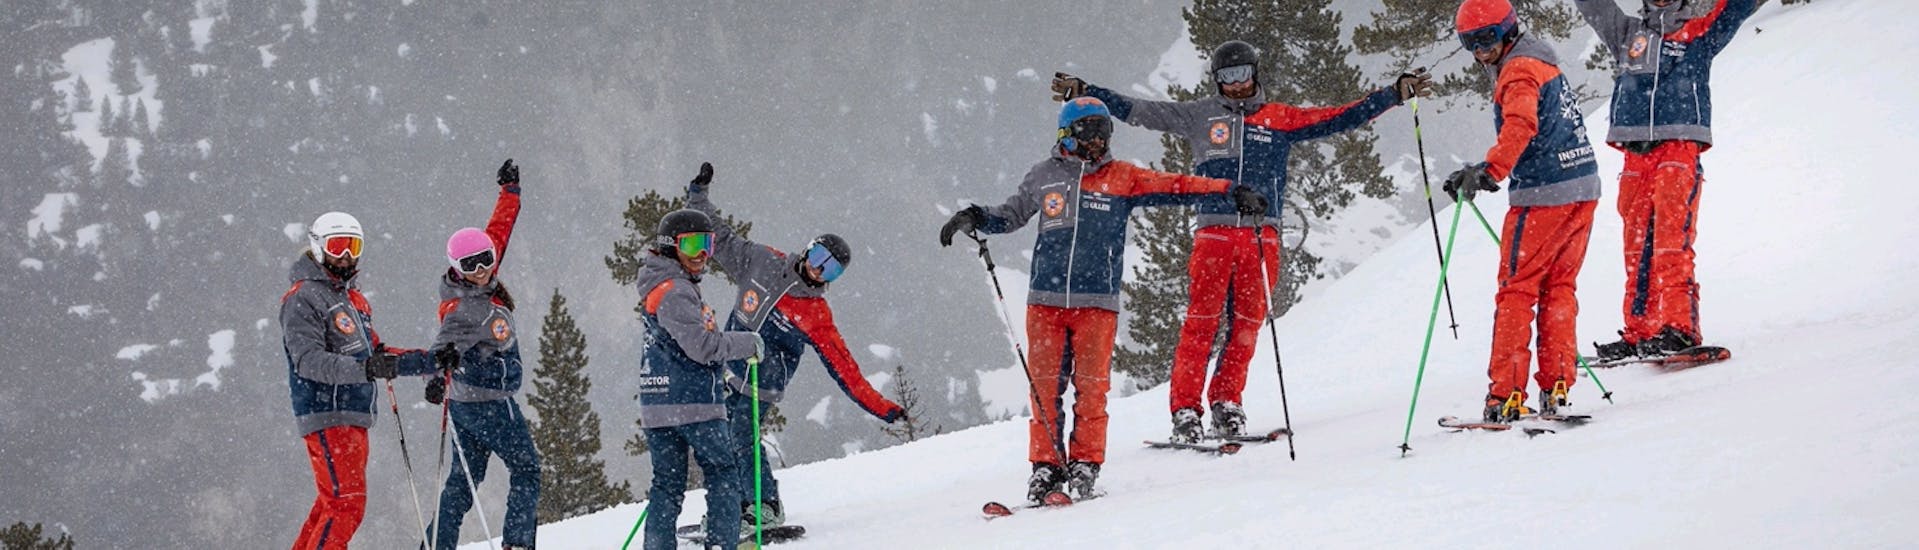 Tour privado de esquí alpino para esquiadores avanzados.